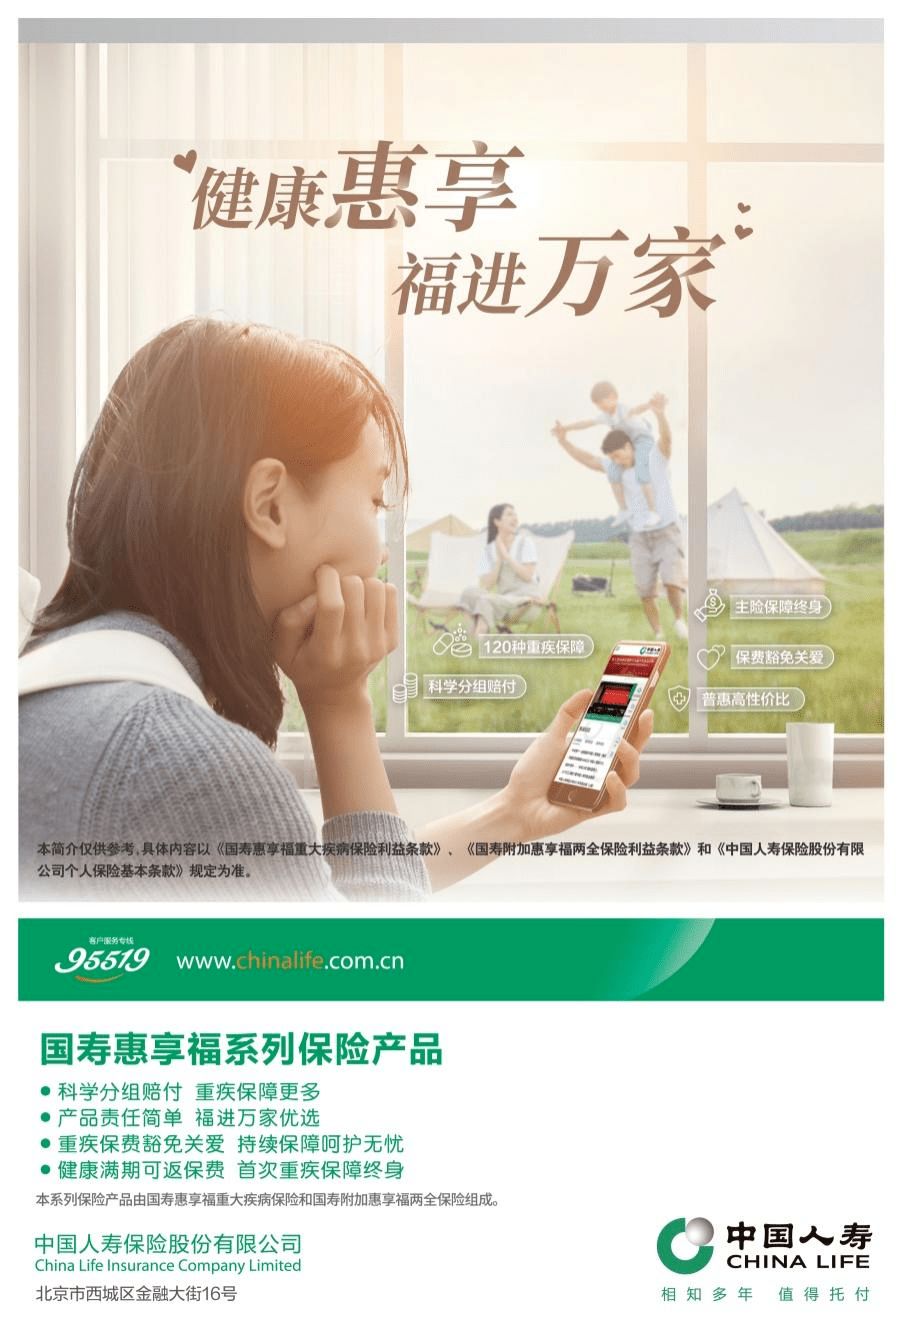 中国人寿寿险推出国寿惠享福系列保险产品